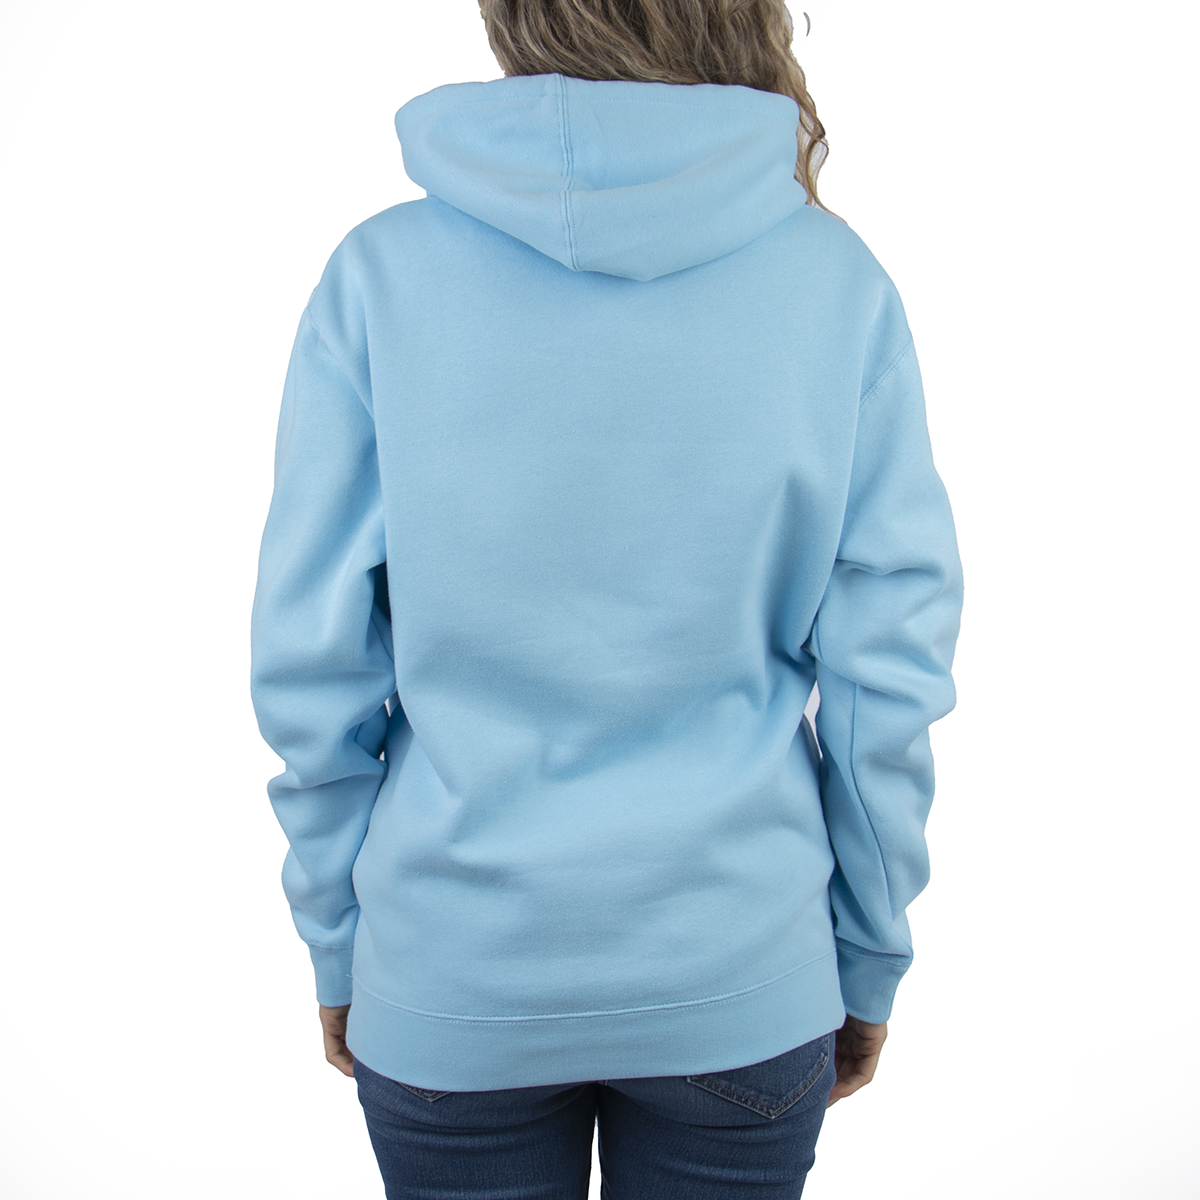 Heavyweight Hooded Sweatshirt - Blue Aqua